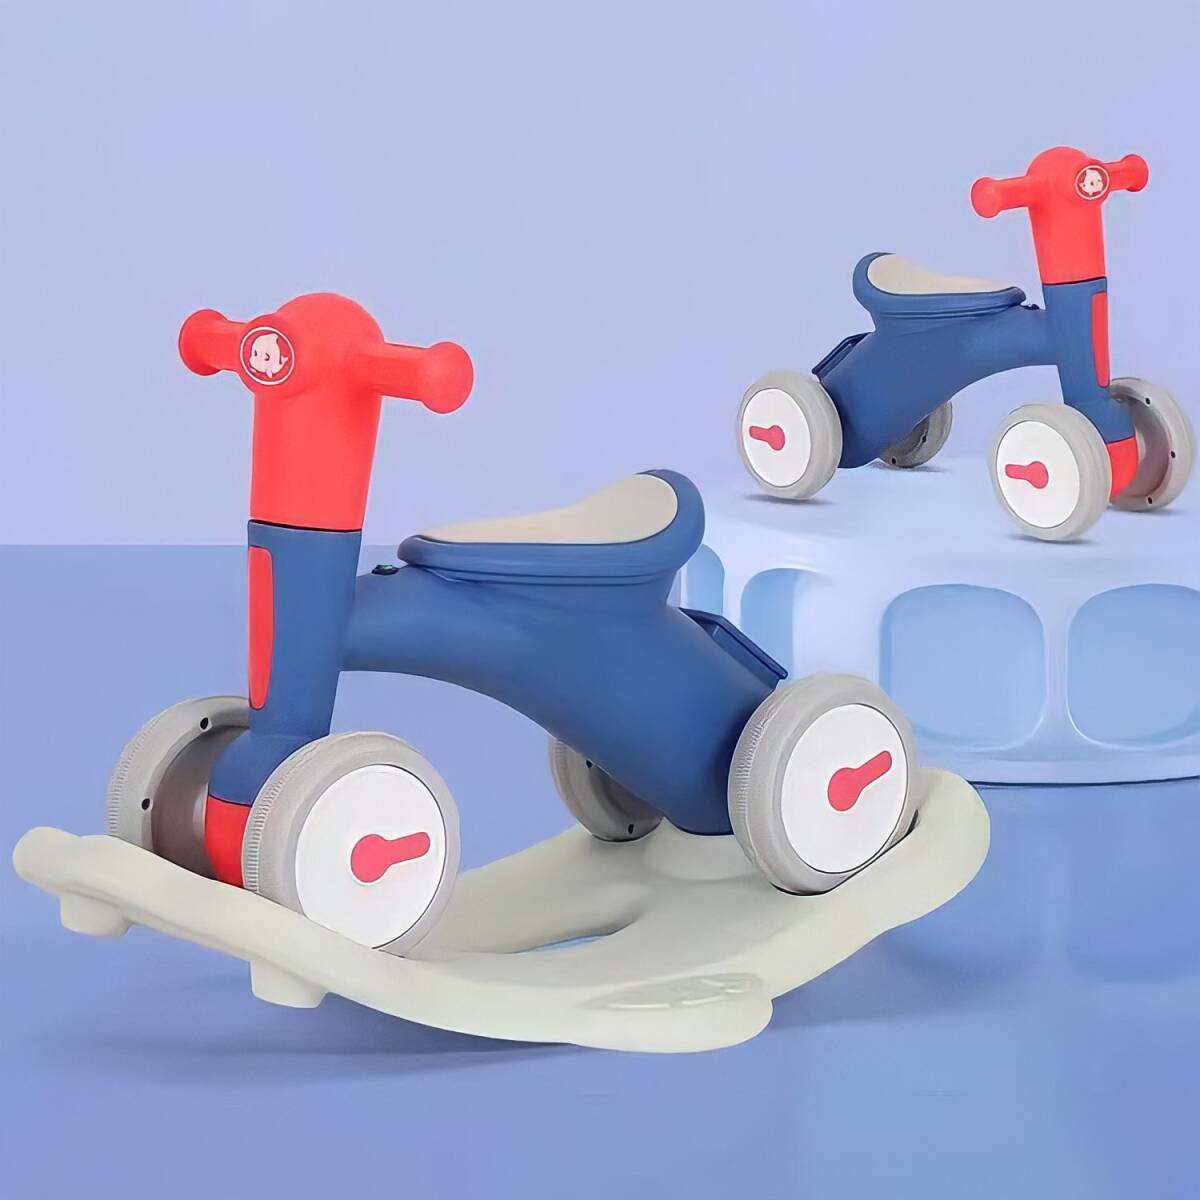  синий синий синий #2WAY# первый в Японии # ходунки # baby War машина # панель Like # самокат # кресло-качалка -# деревянная лошадь # ручная тележка # велосипед без педалей 